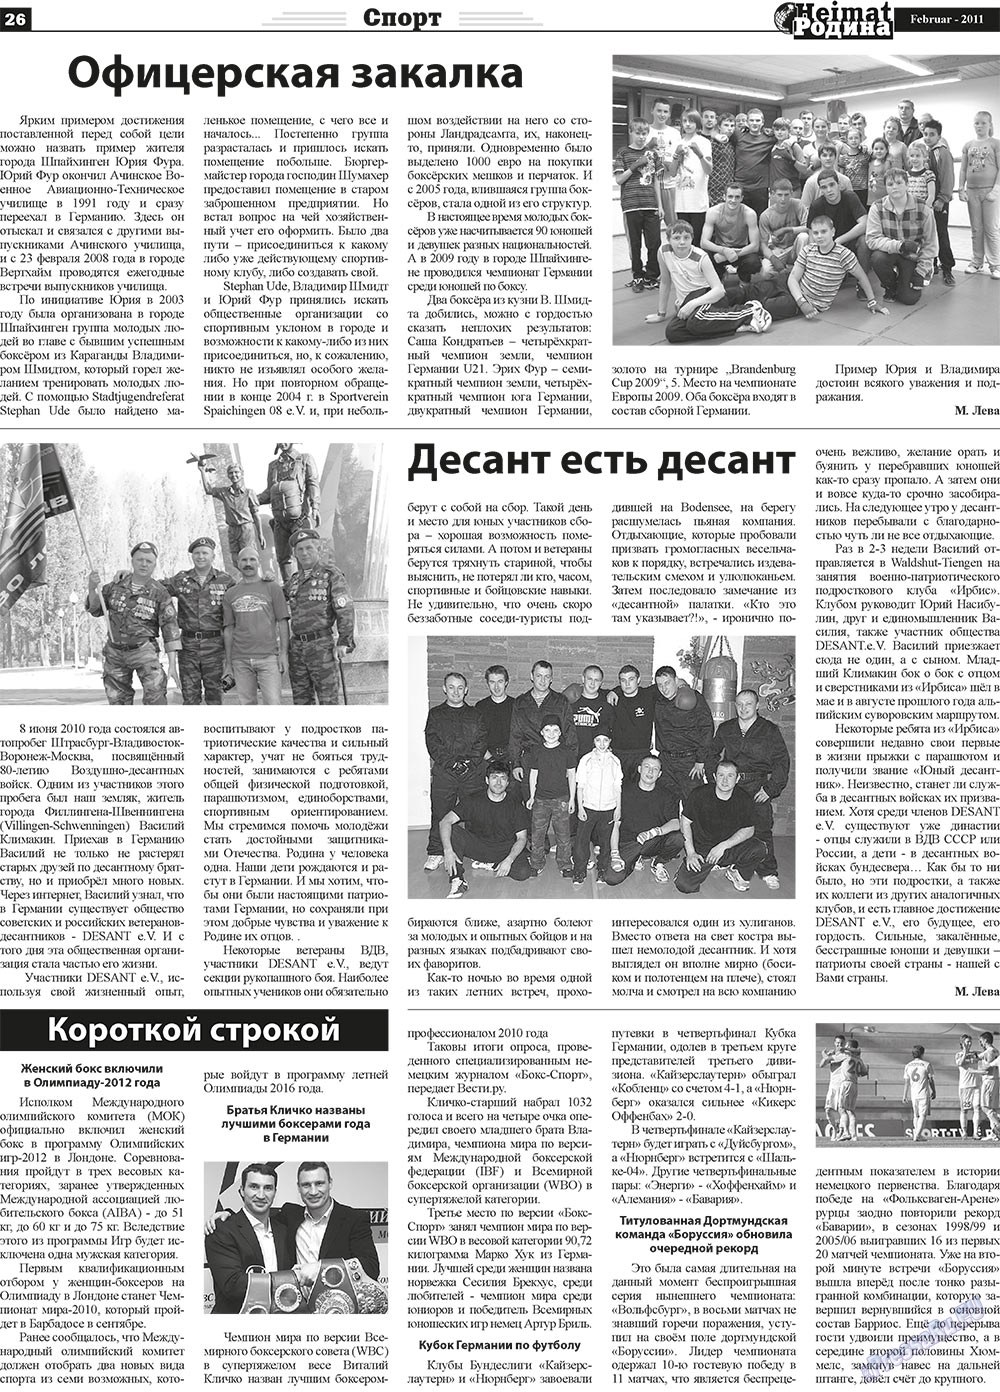 Heimat-Родина (газета). 2011 год, номер 2, стр. 26